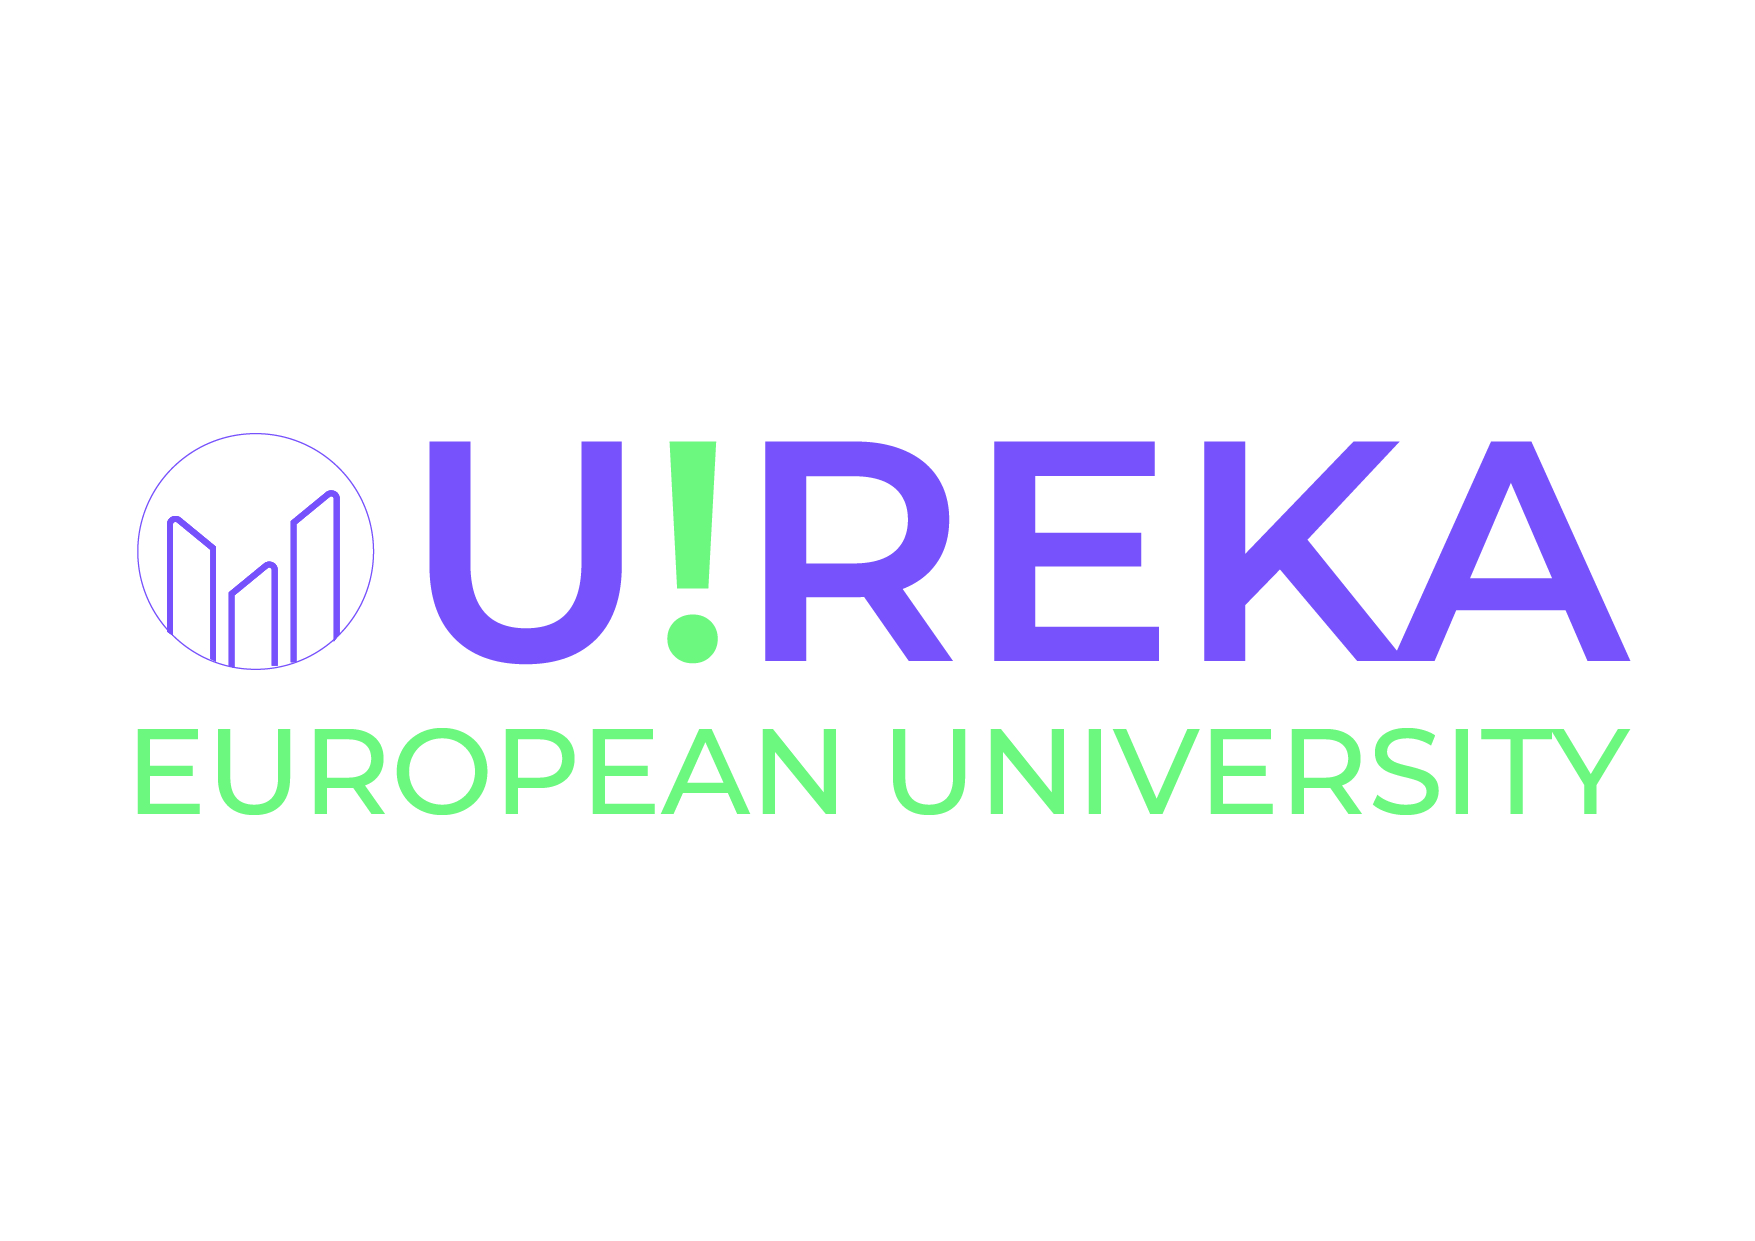 Ureka European University